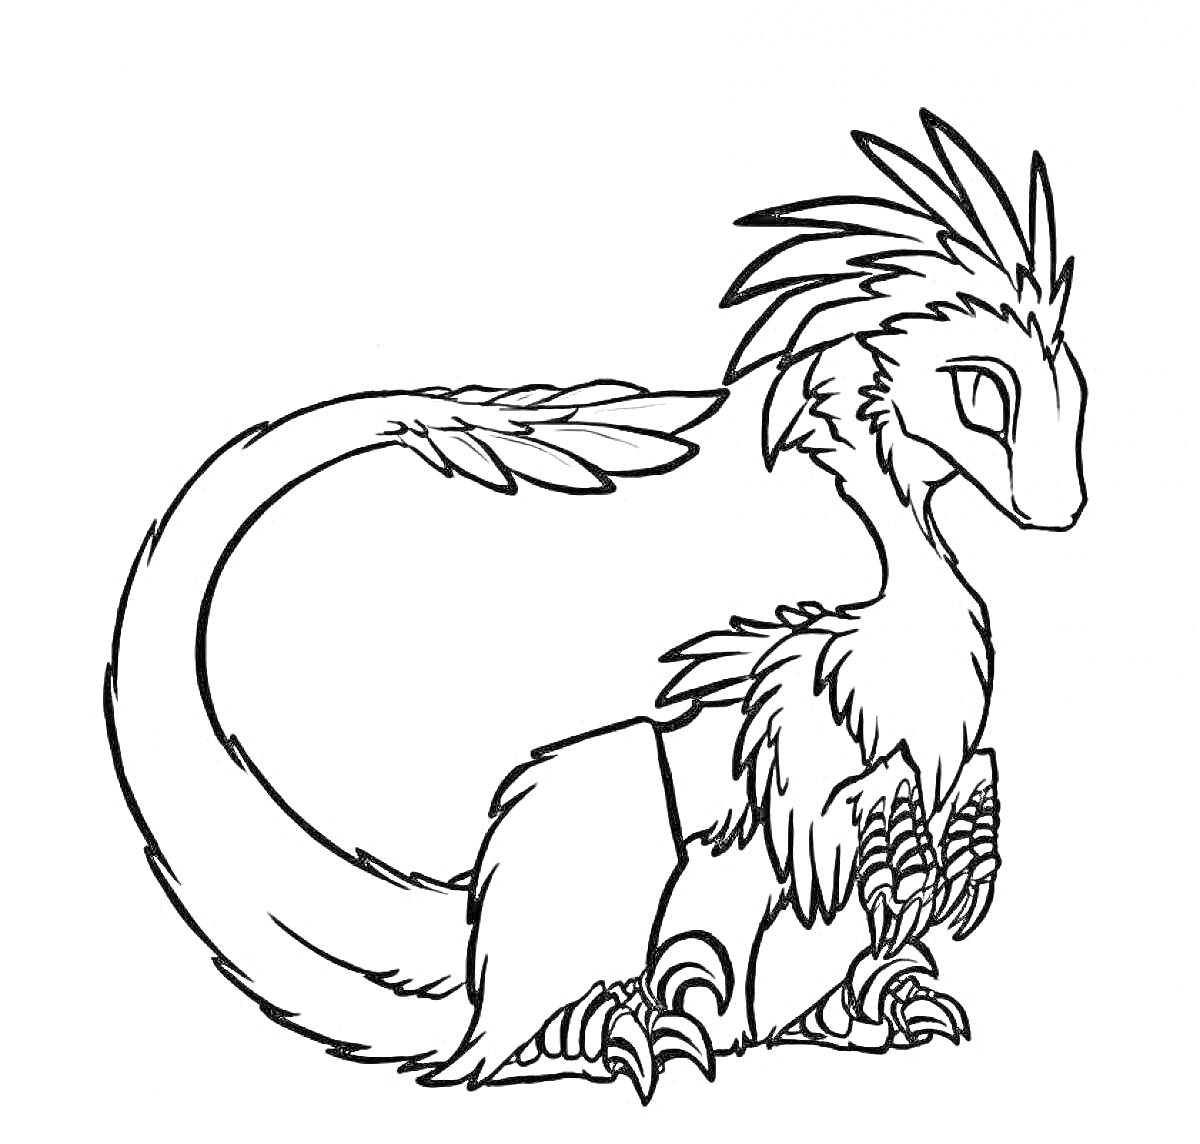 Раскраска Волшебное животное с перьями и лапами, сидящее с закругленным хвостом